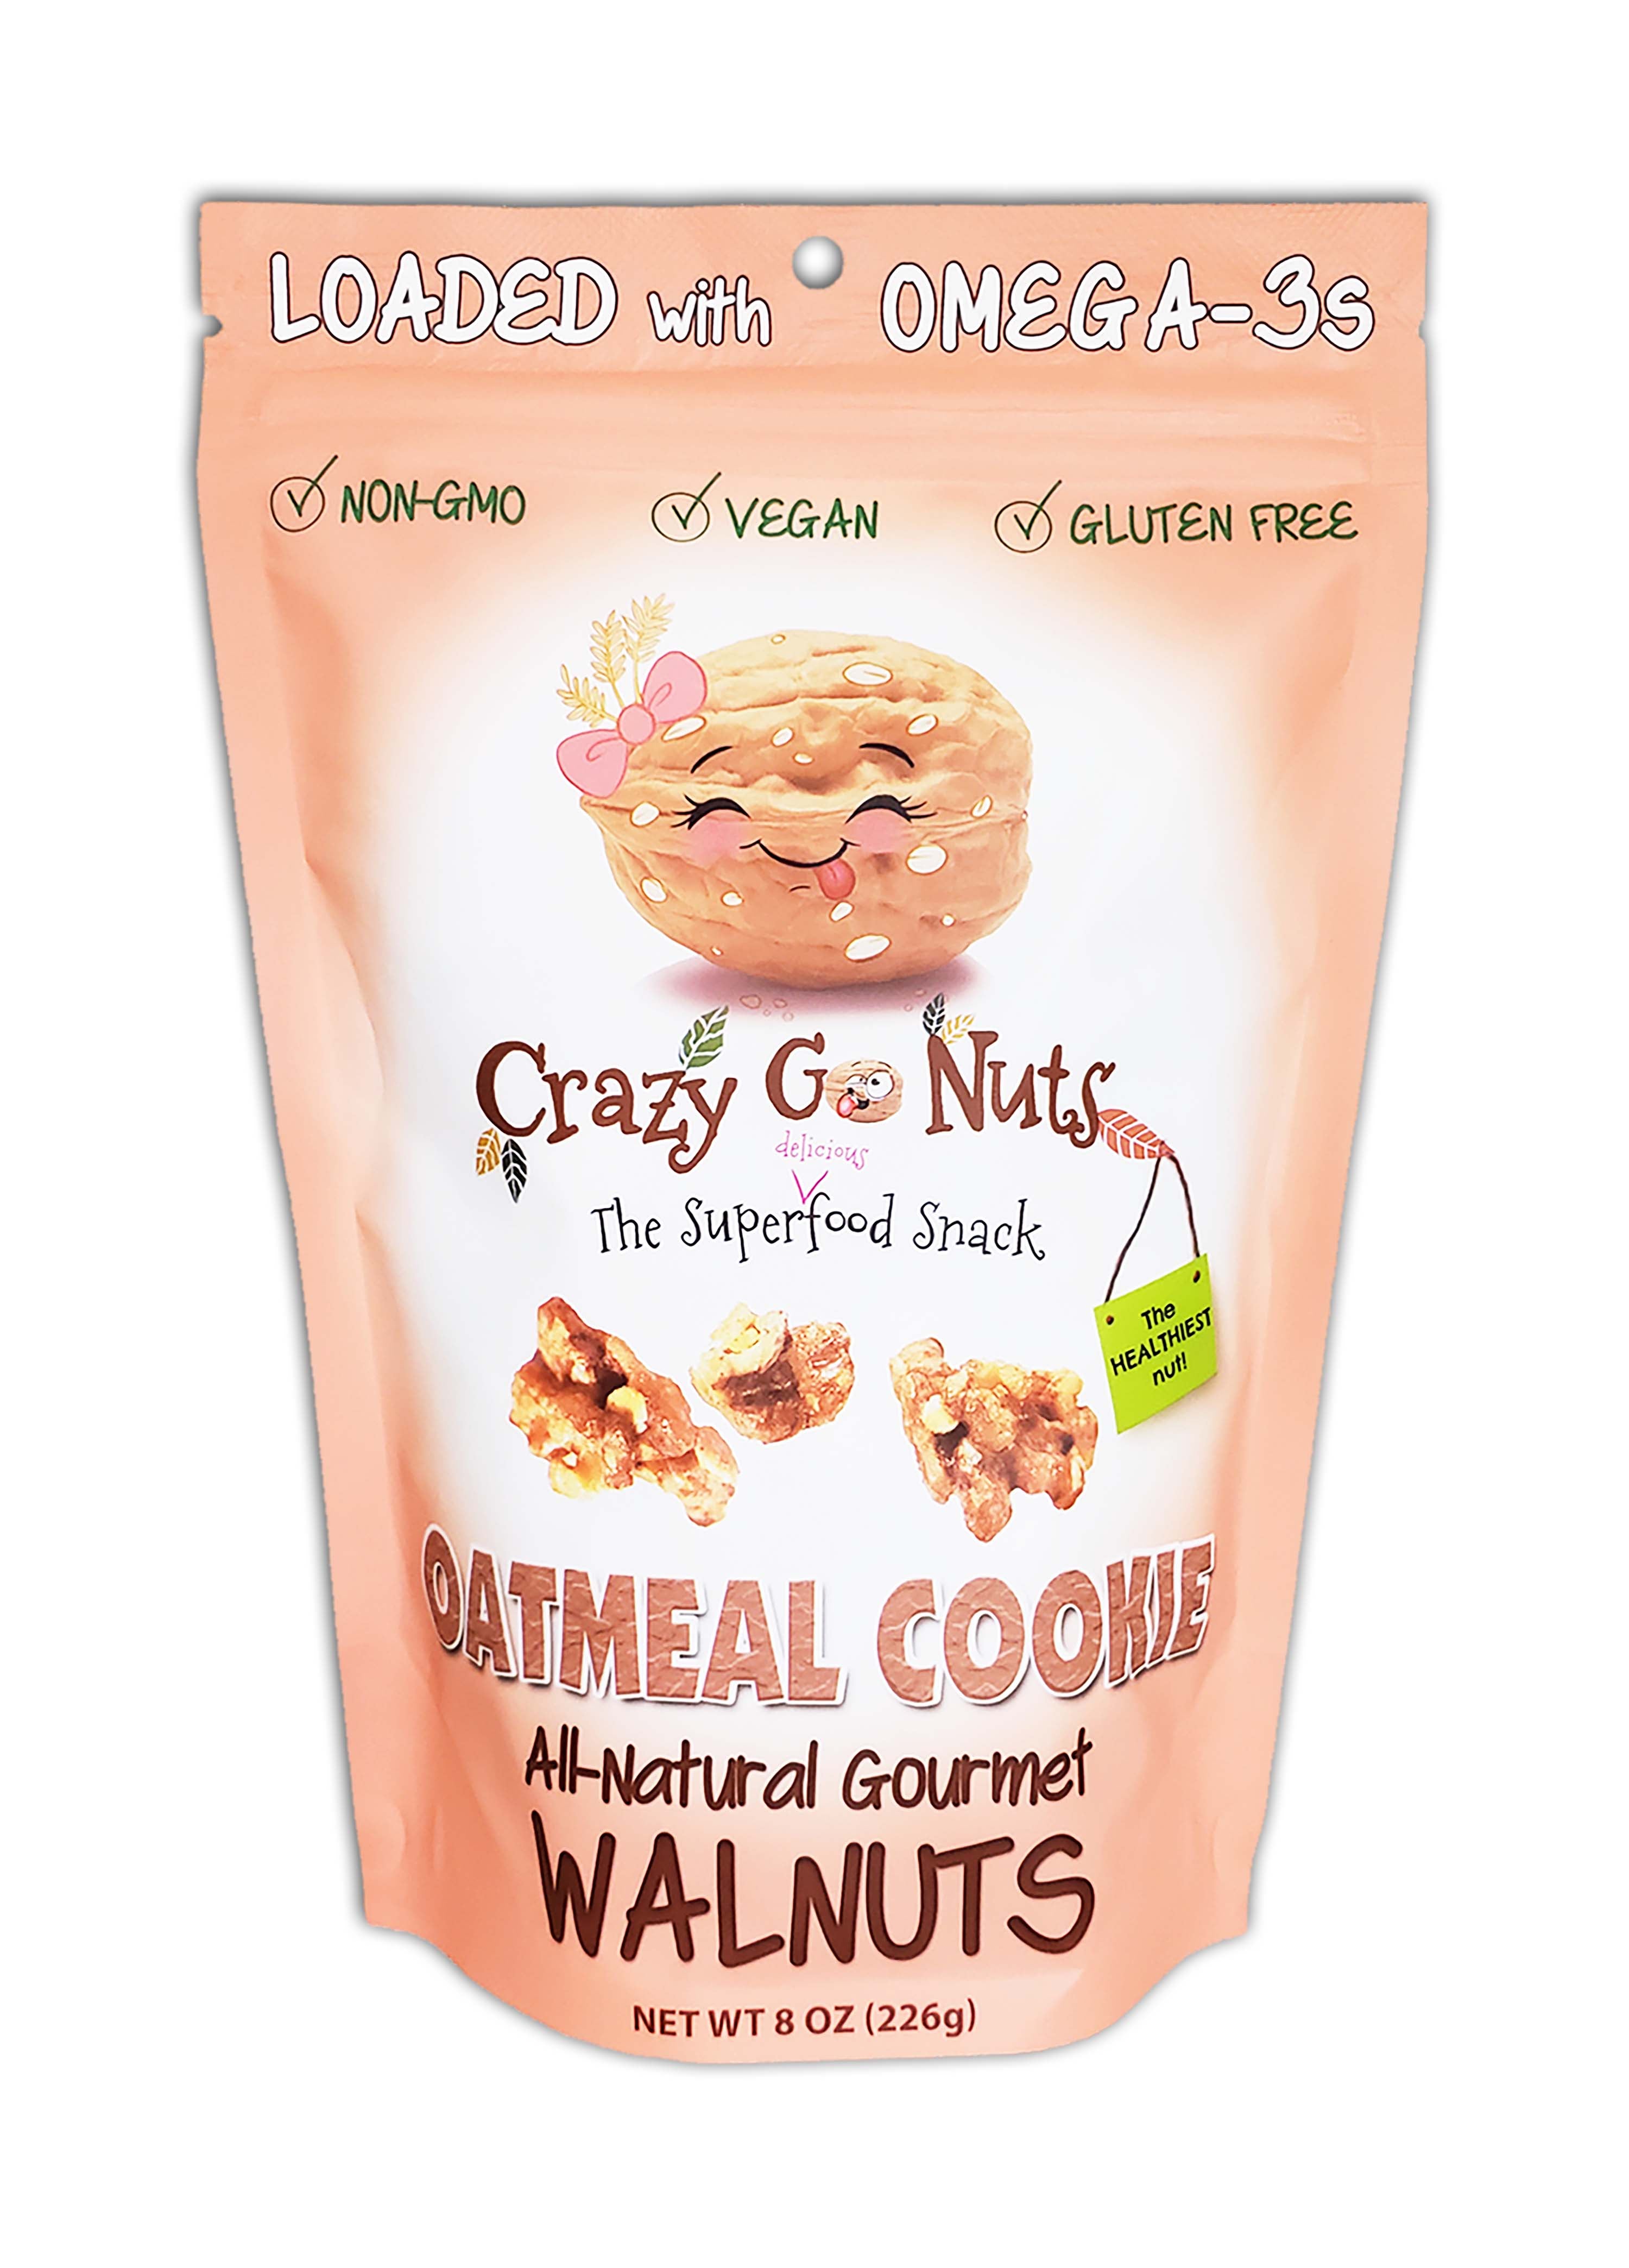 8.0 oz. Oatmeal Cookie Walnut Snacks